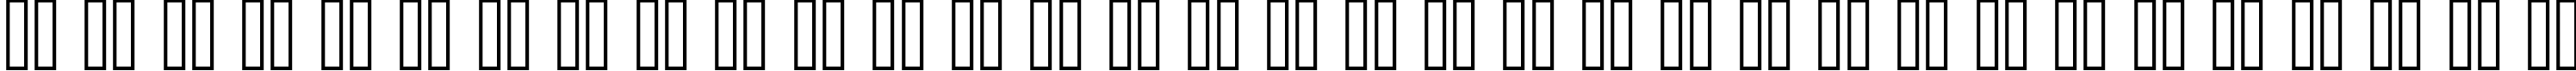 Пример написания русского алфавита шрифтом copy 08_55